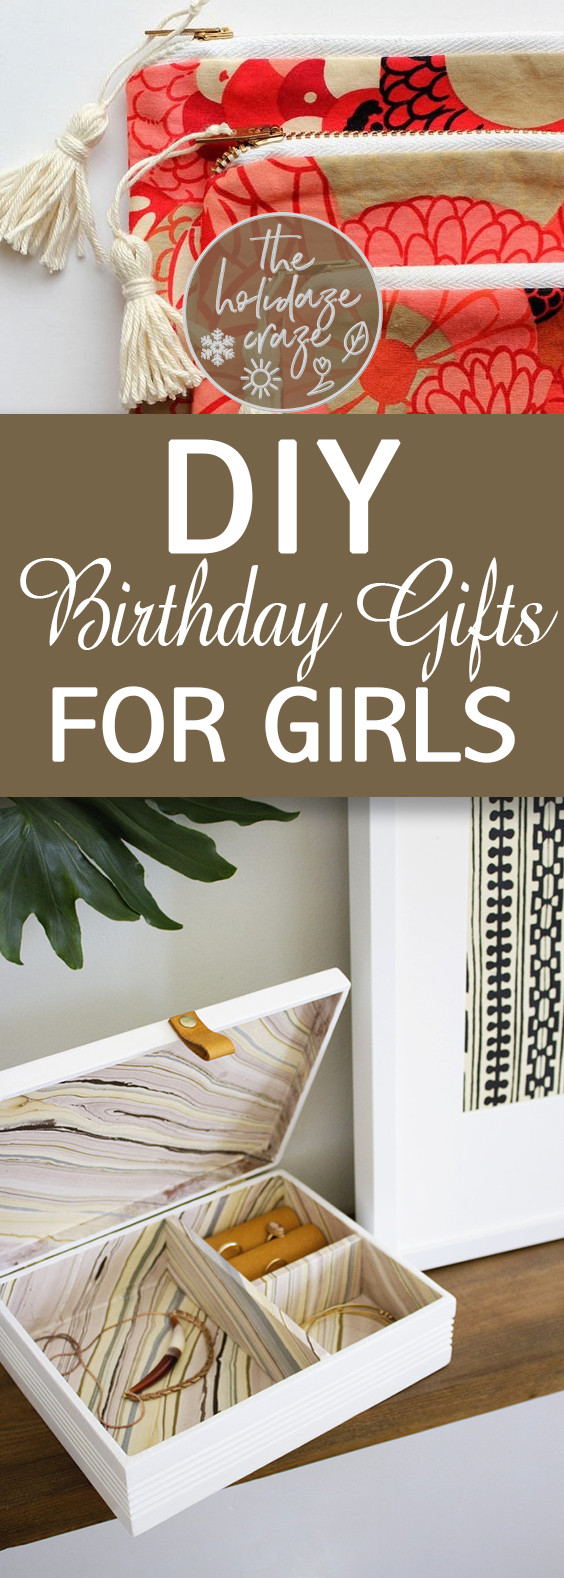 DIY Birthday Gift For Girl
 DIY Birthday Gifts for Girls